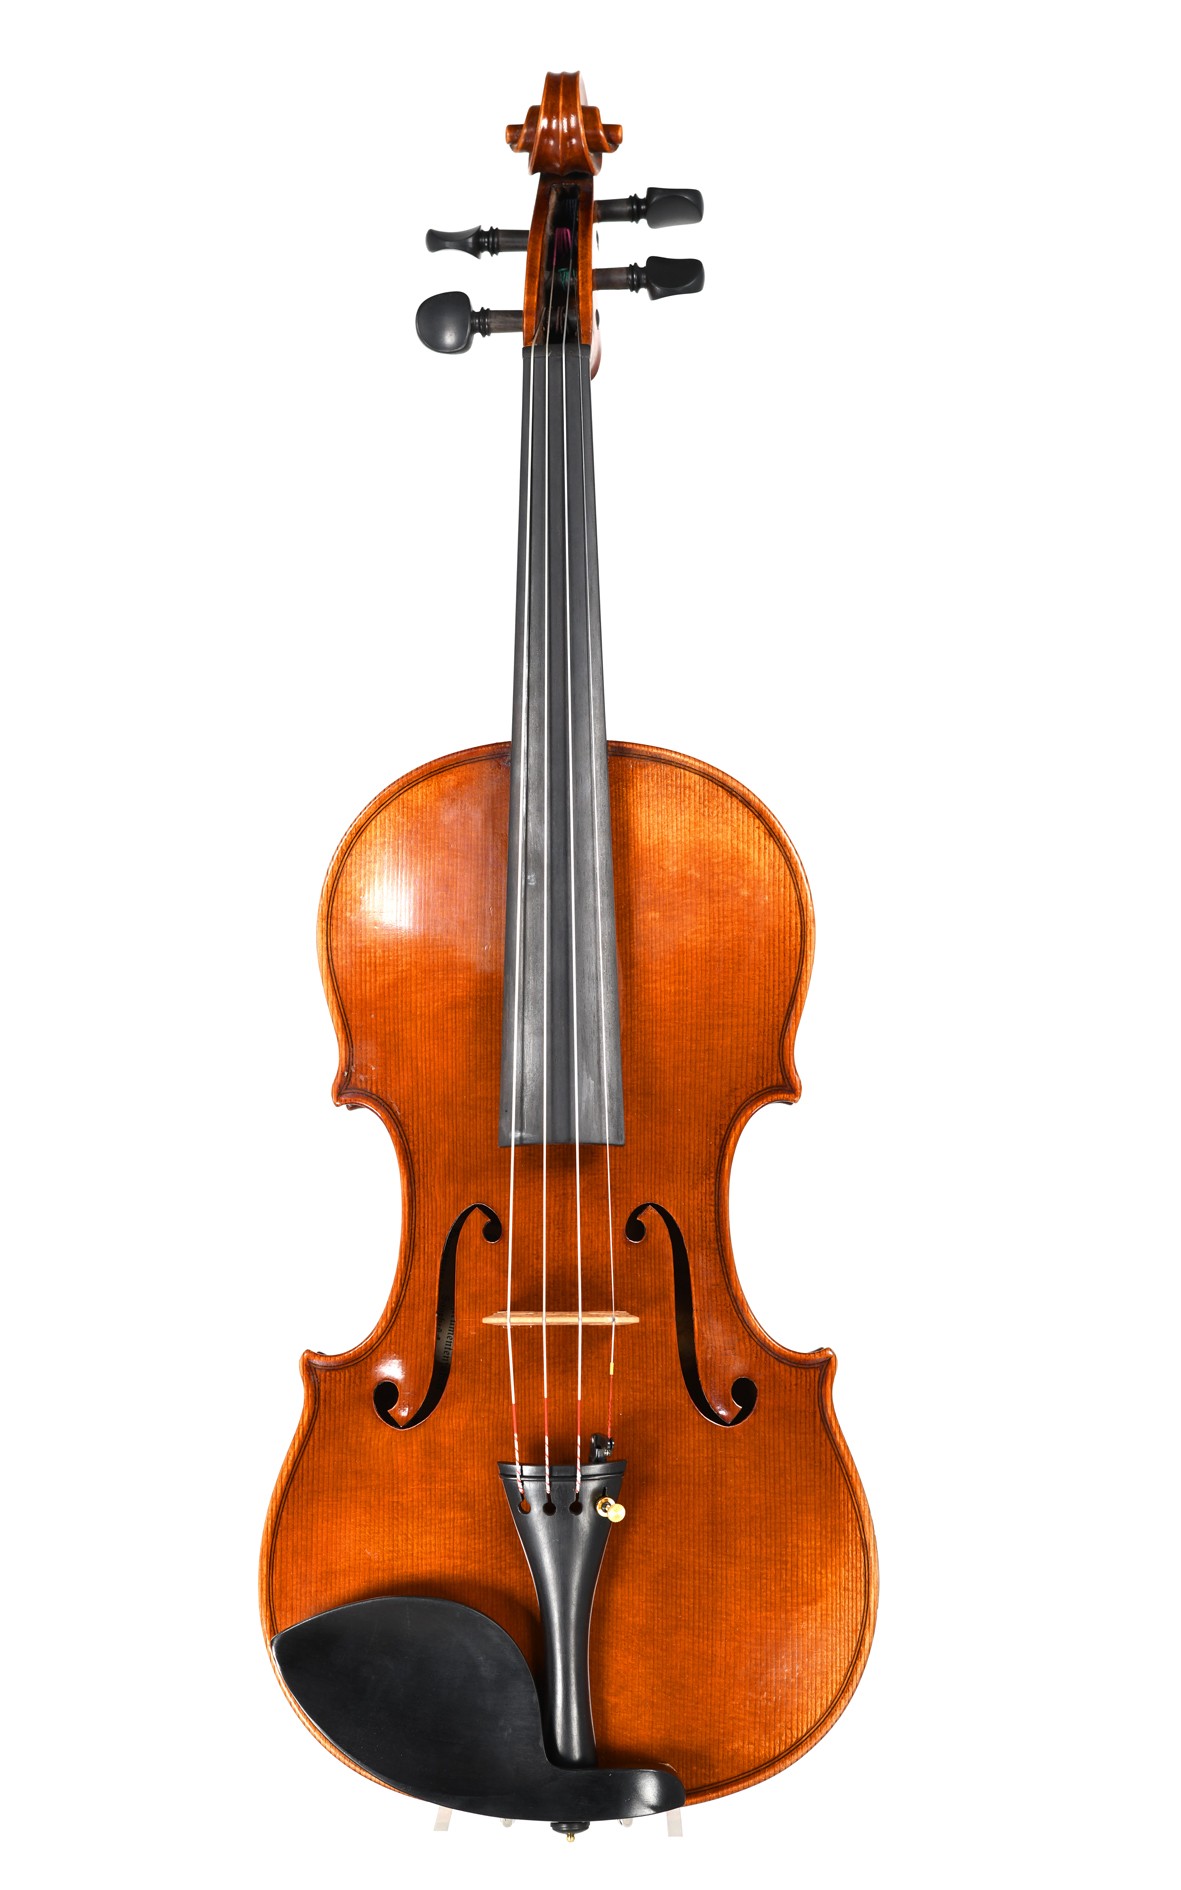 F. C. Louis violin